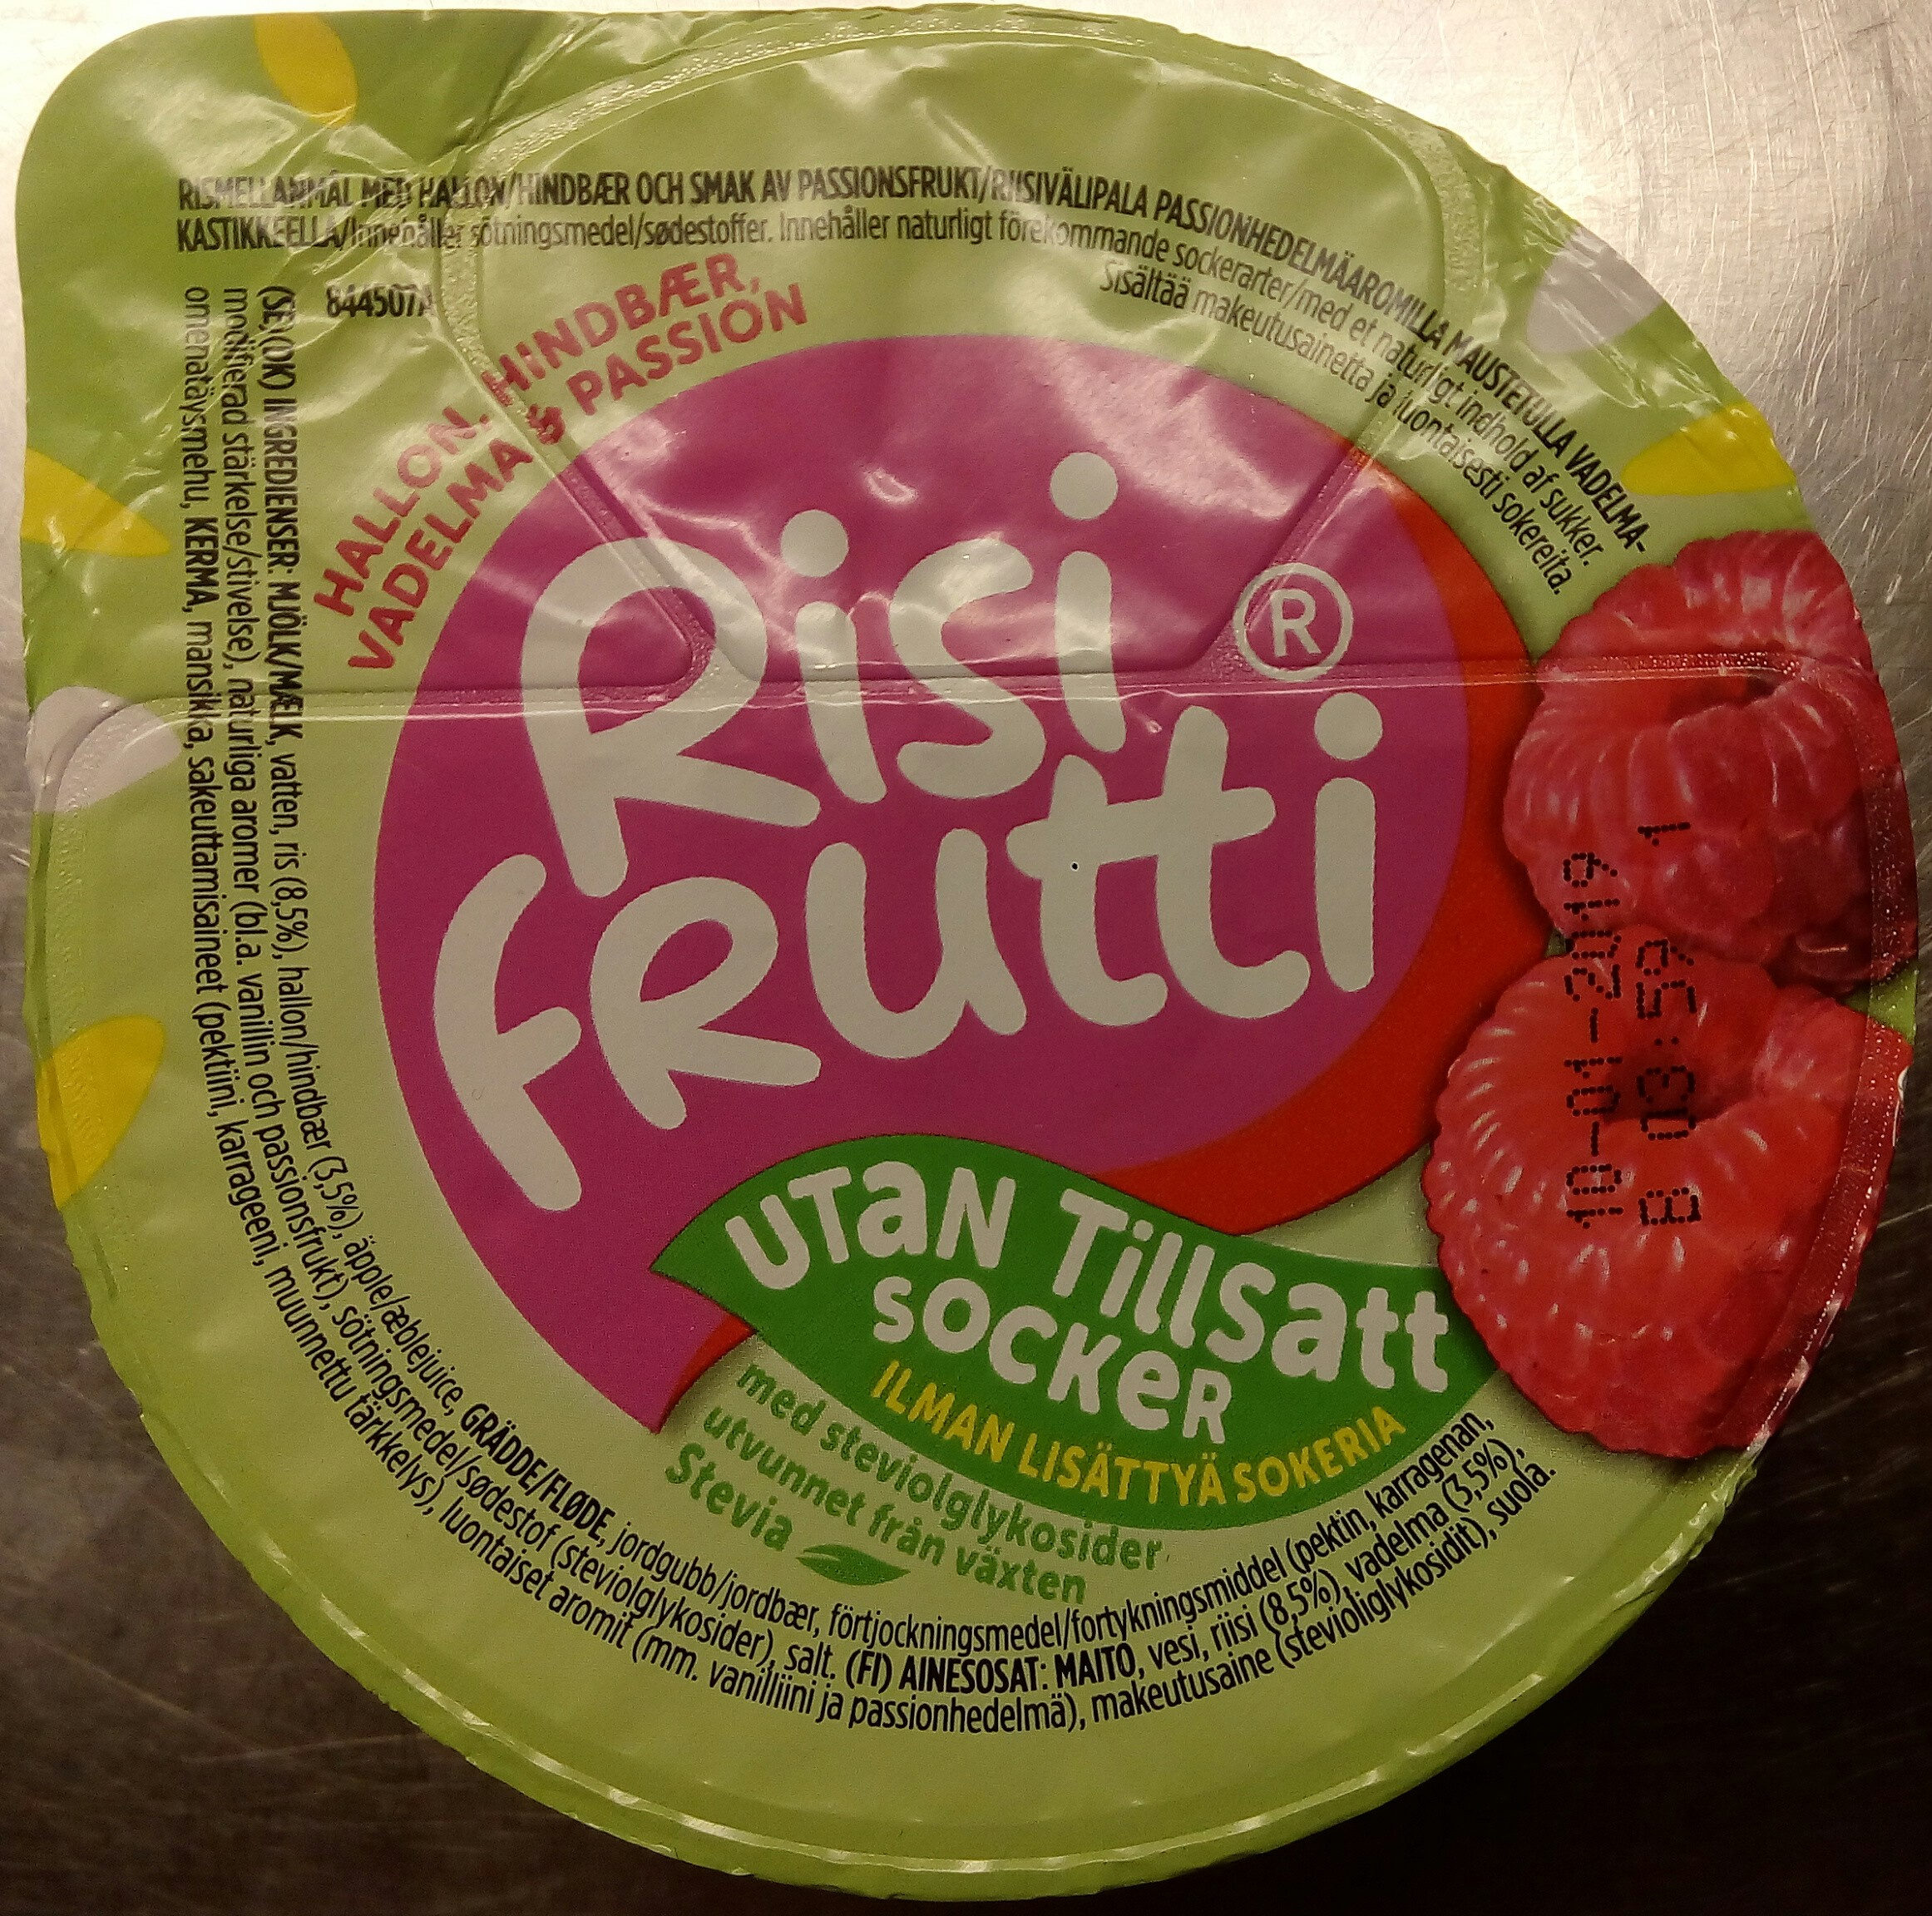 Risifrutti Hallon & Passion Utan tillsatt socker - Produkt